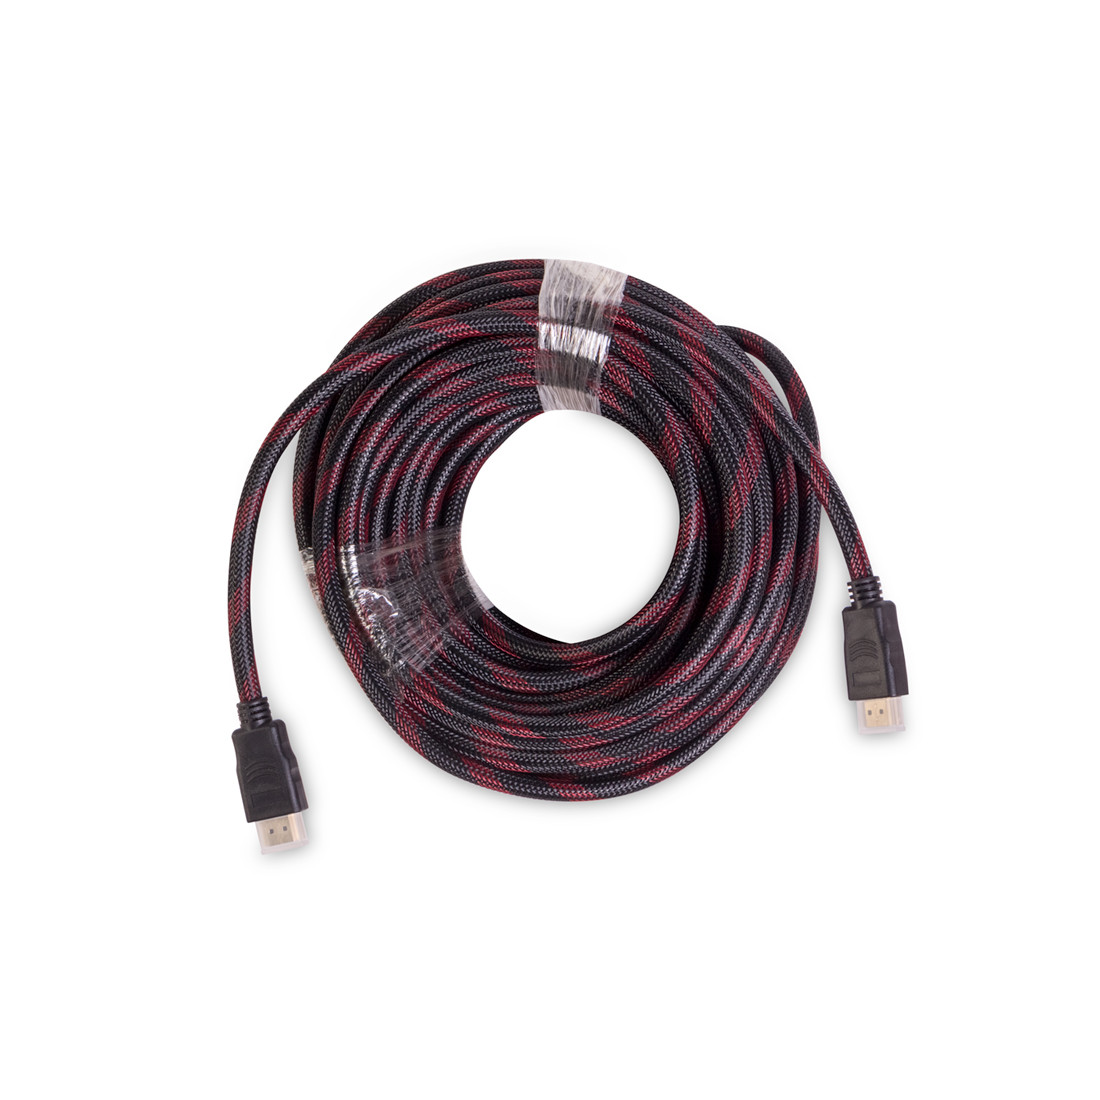 HDMI-кабель версии 1.4 длиной 15 метров iPower HDMI-HDMI ver.1.4 от бренда iPower